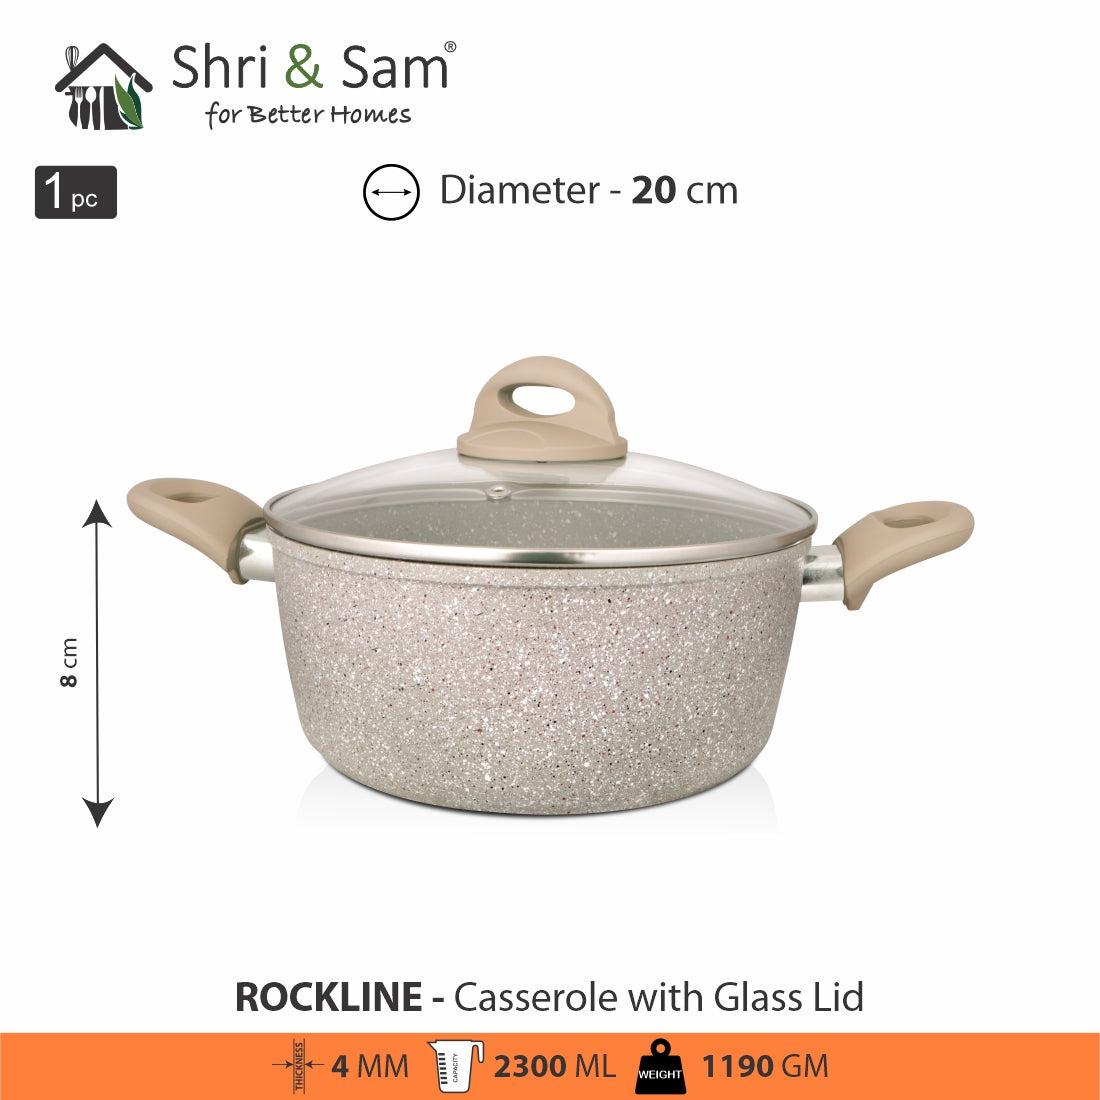 Aluminium Non-Stick Casserole with Glass Lid Rockline